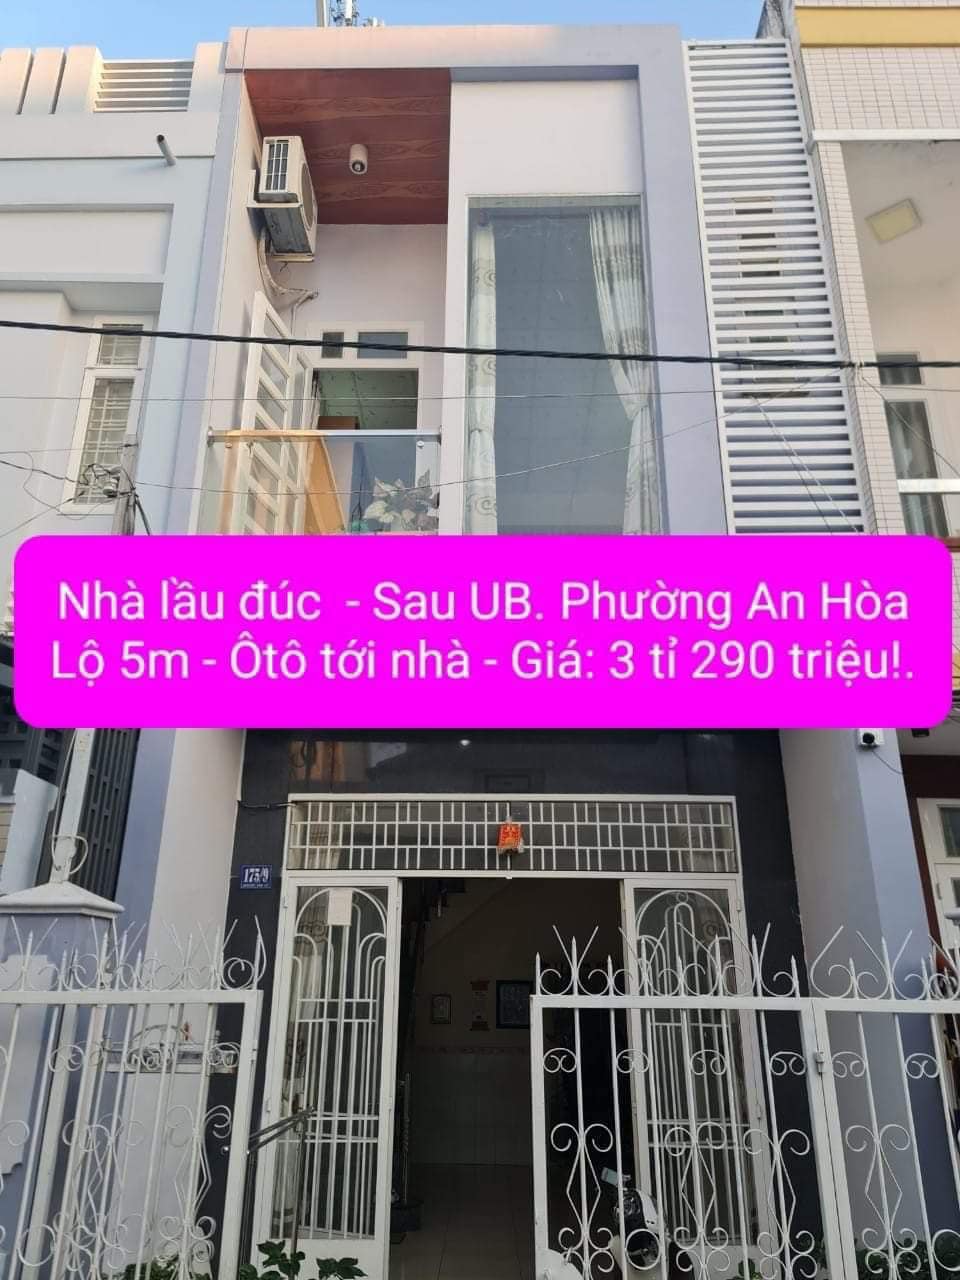 Bán nhà riêng quận Ninh Kiều thành phố Cần Thơ, giá 3,29 tỷ